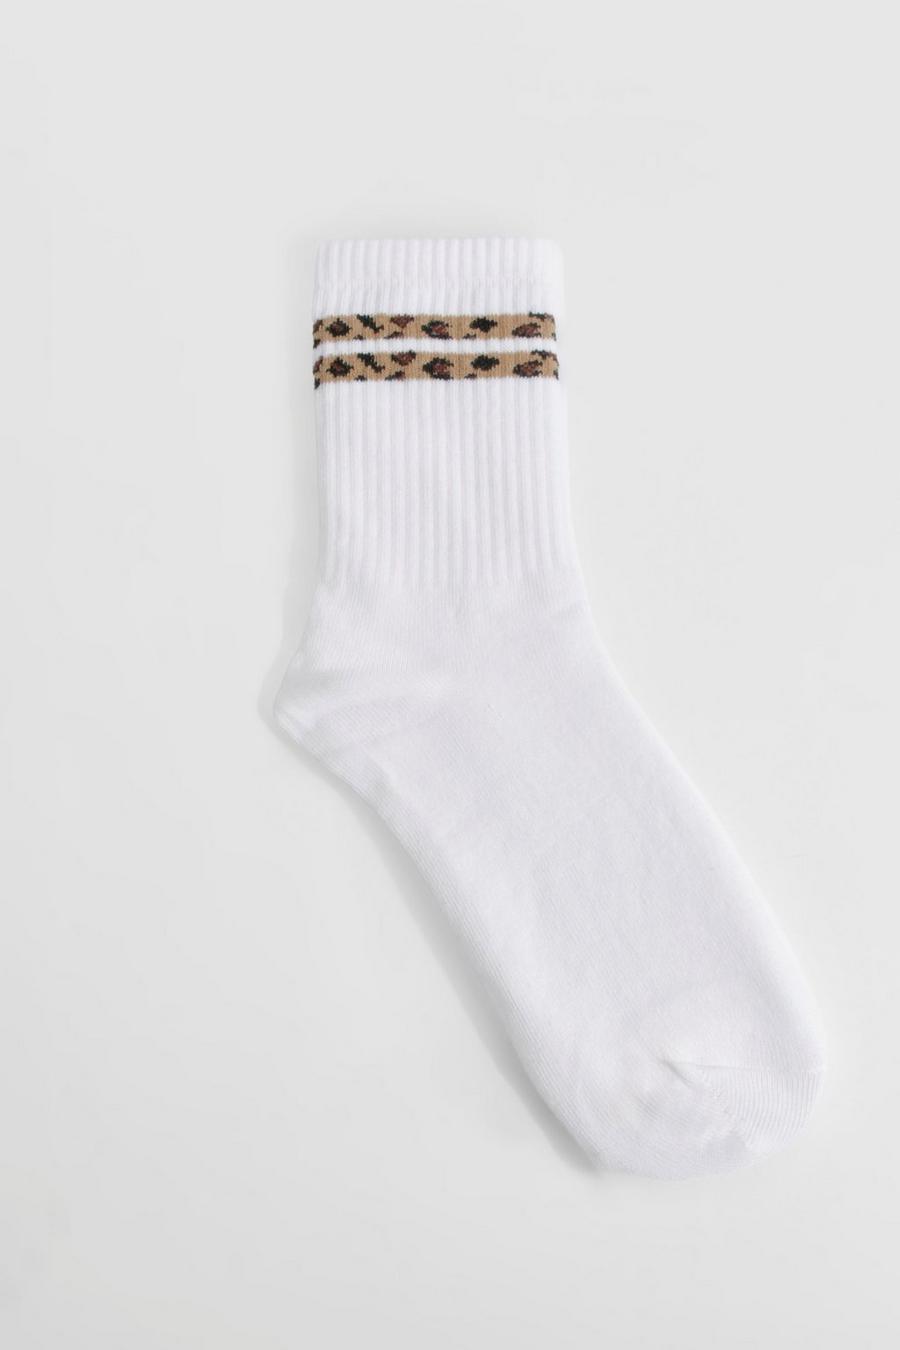 Leopardenprint Socken mit doppelten Streifen, Leopard